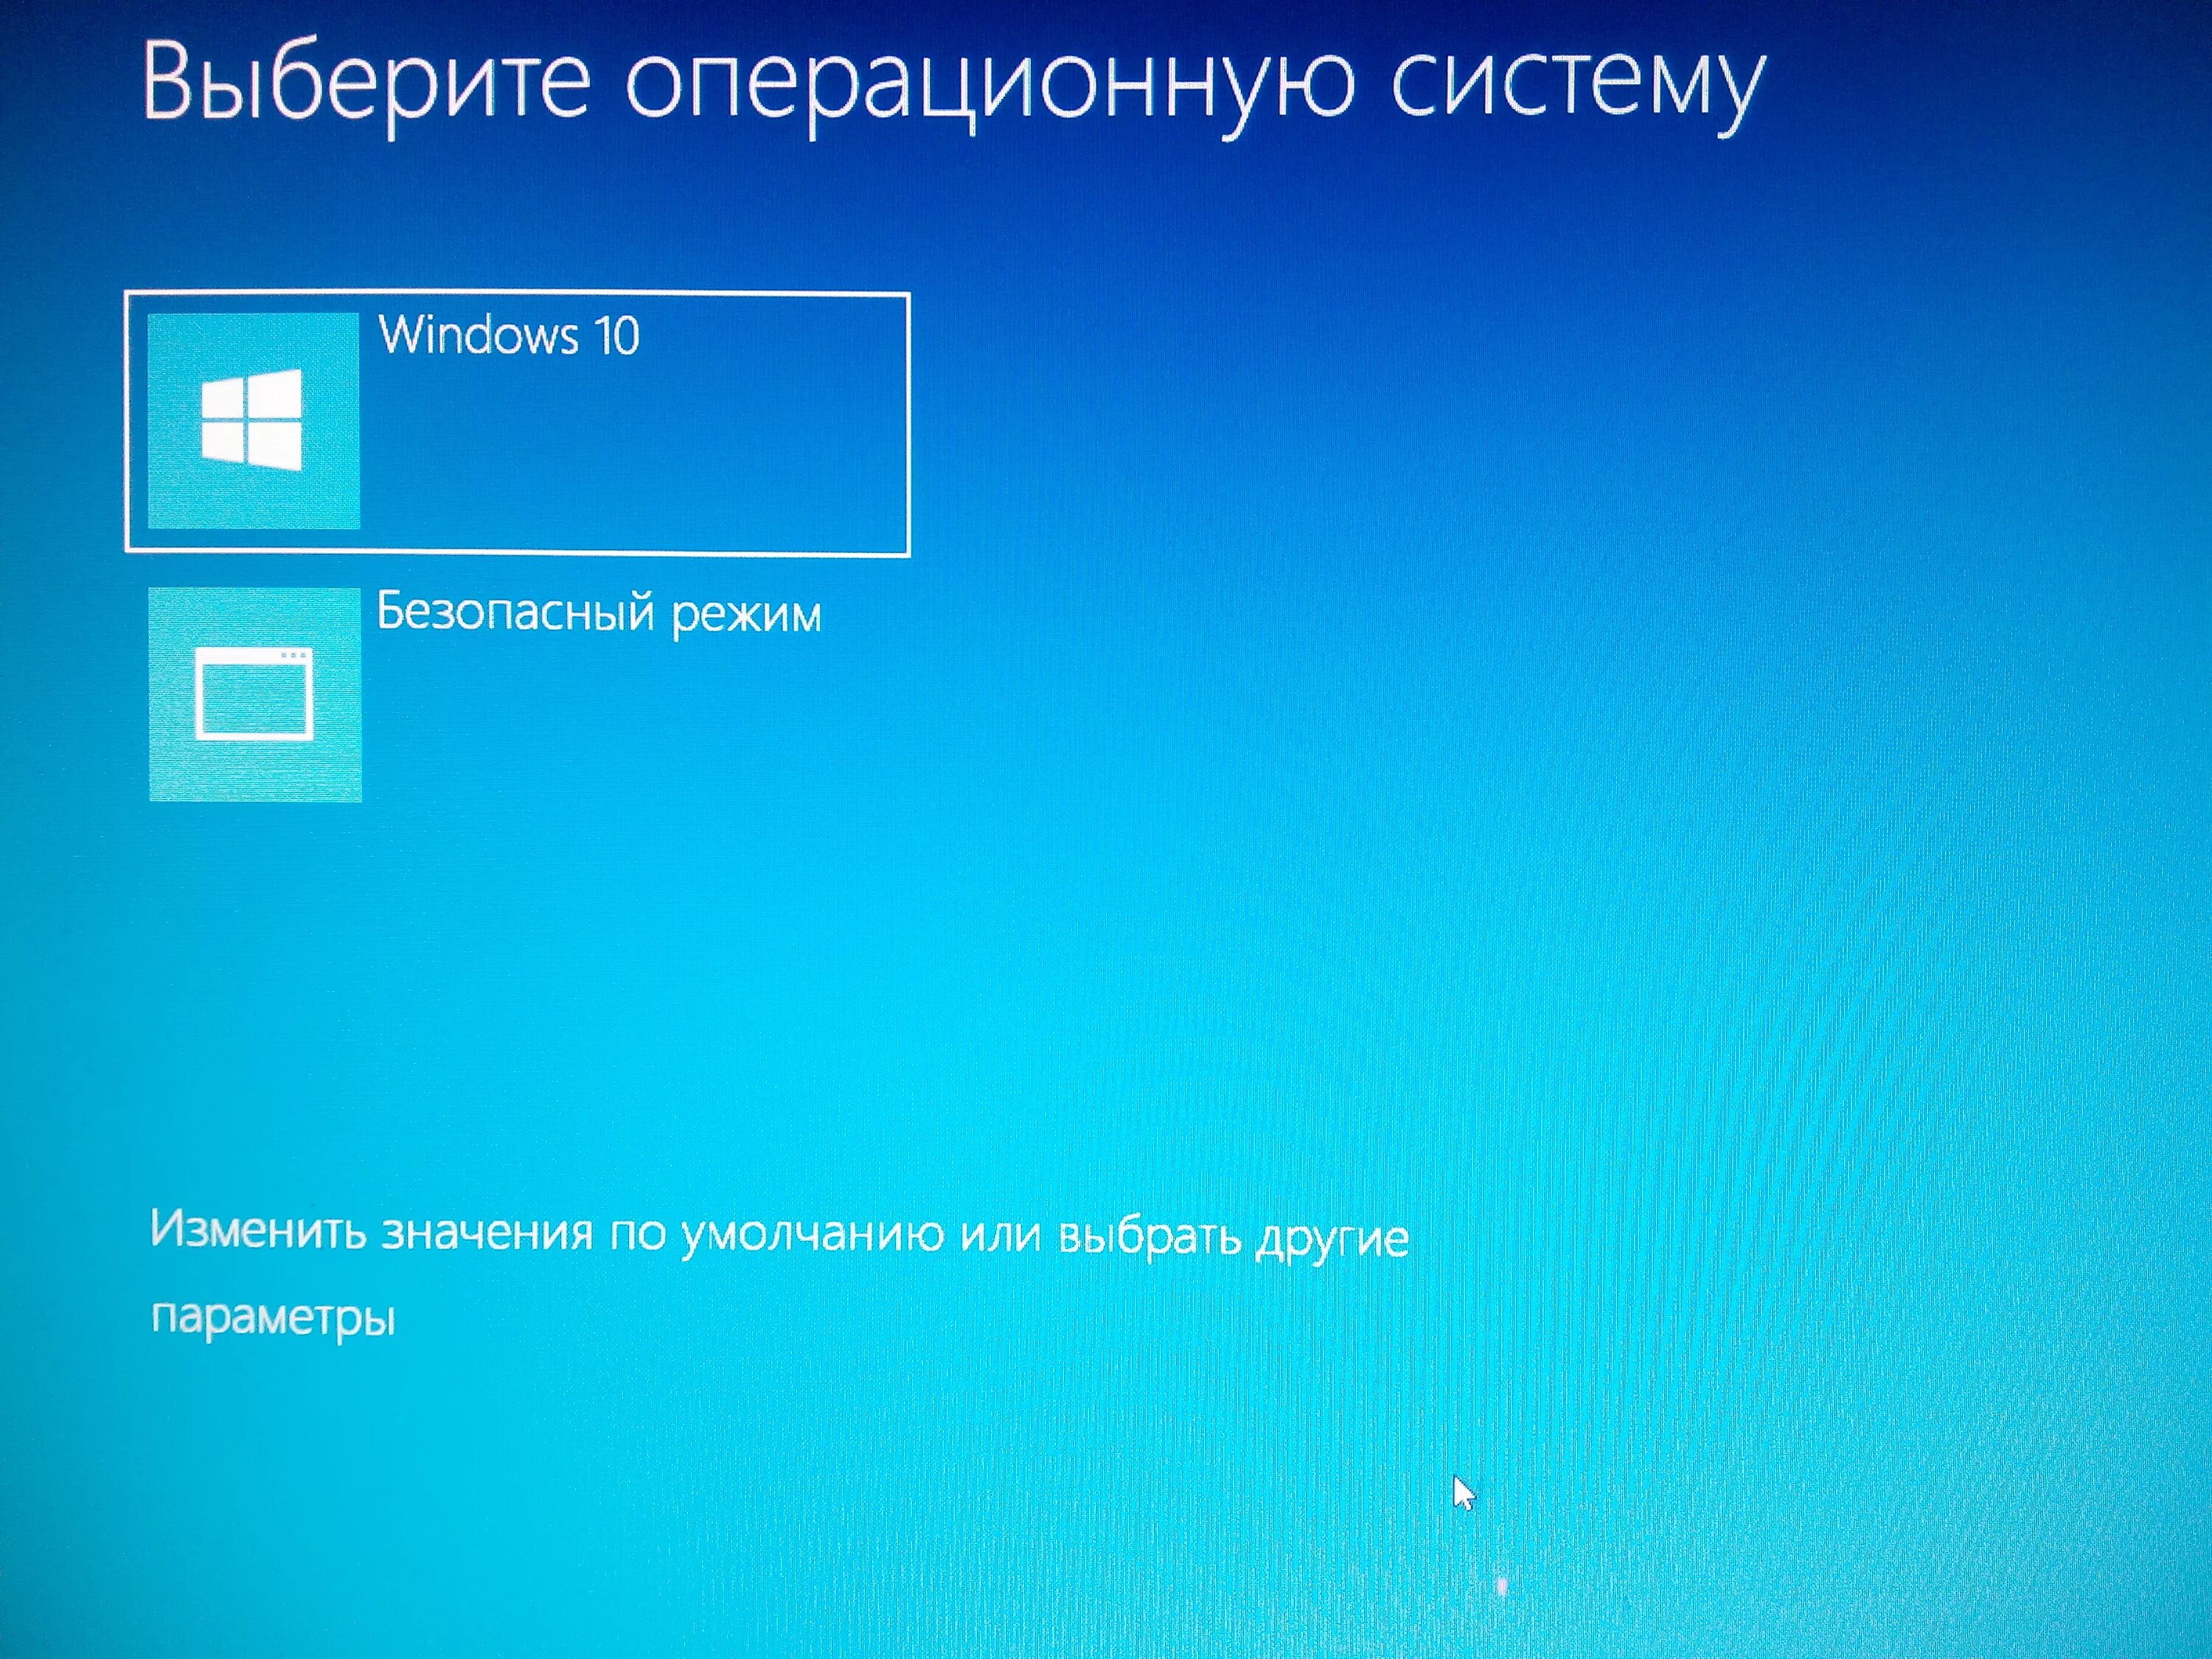 Load windows 10. Загрузка в безопасном режиме. Загрузка операционной системы Windows 10. Меню загрузки Windows 10. Компьютер в безопасном режиме.